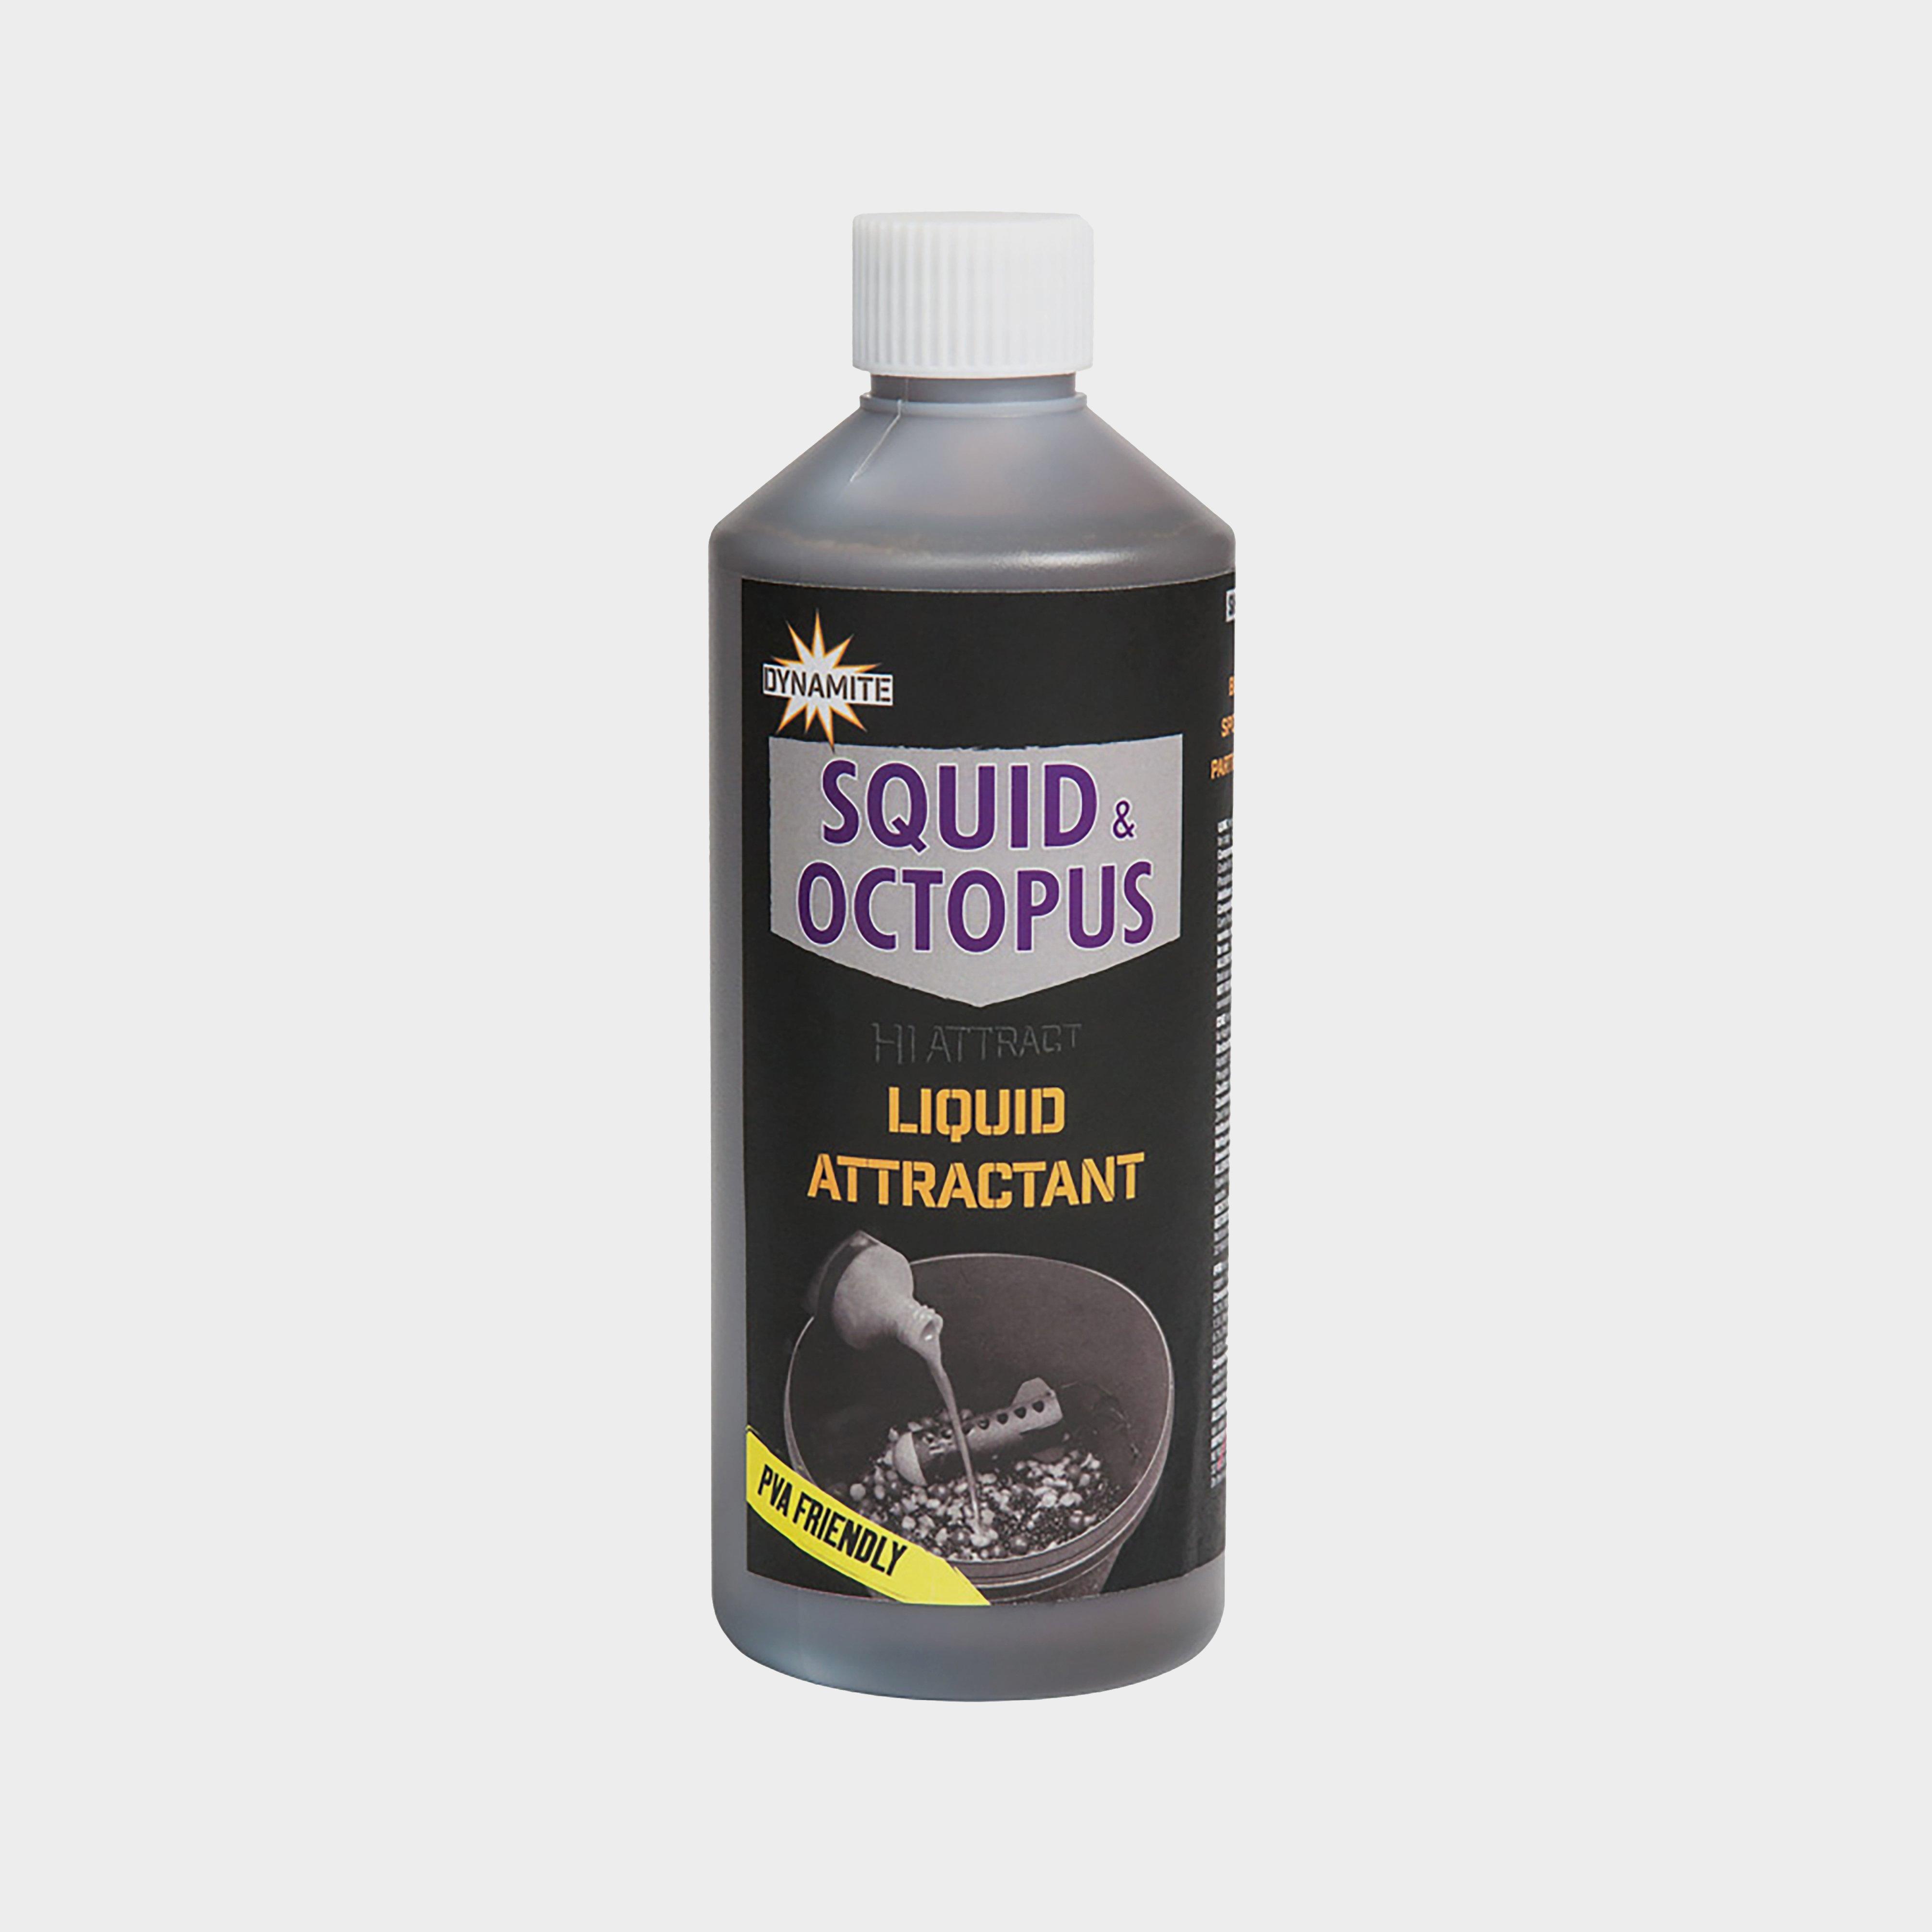 Dynamite SquidandOctopus Liquid Attractant 500ml